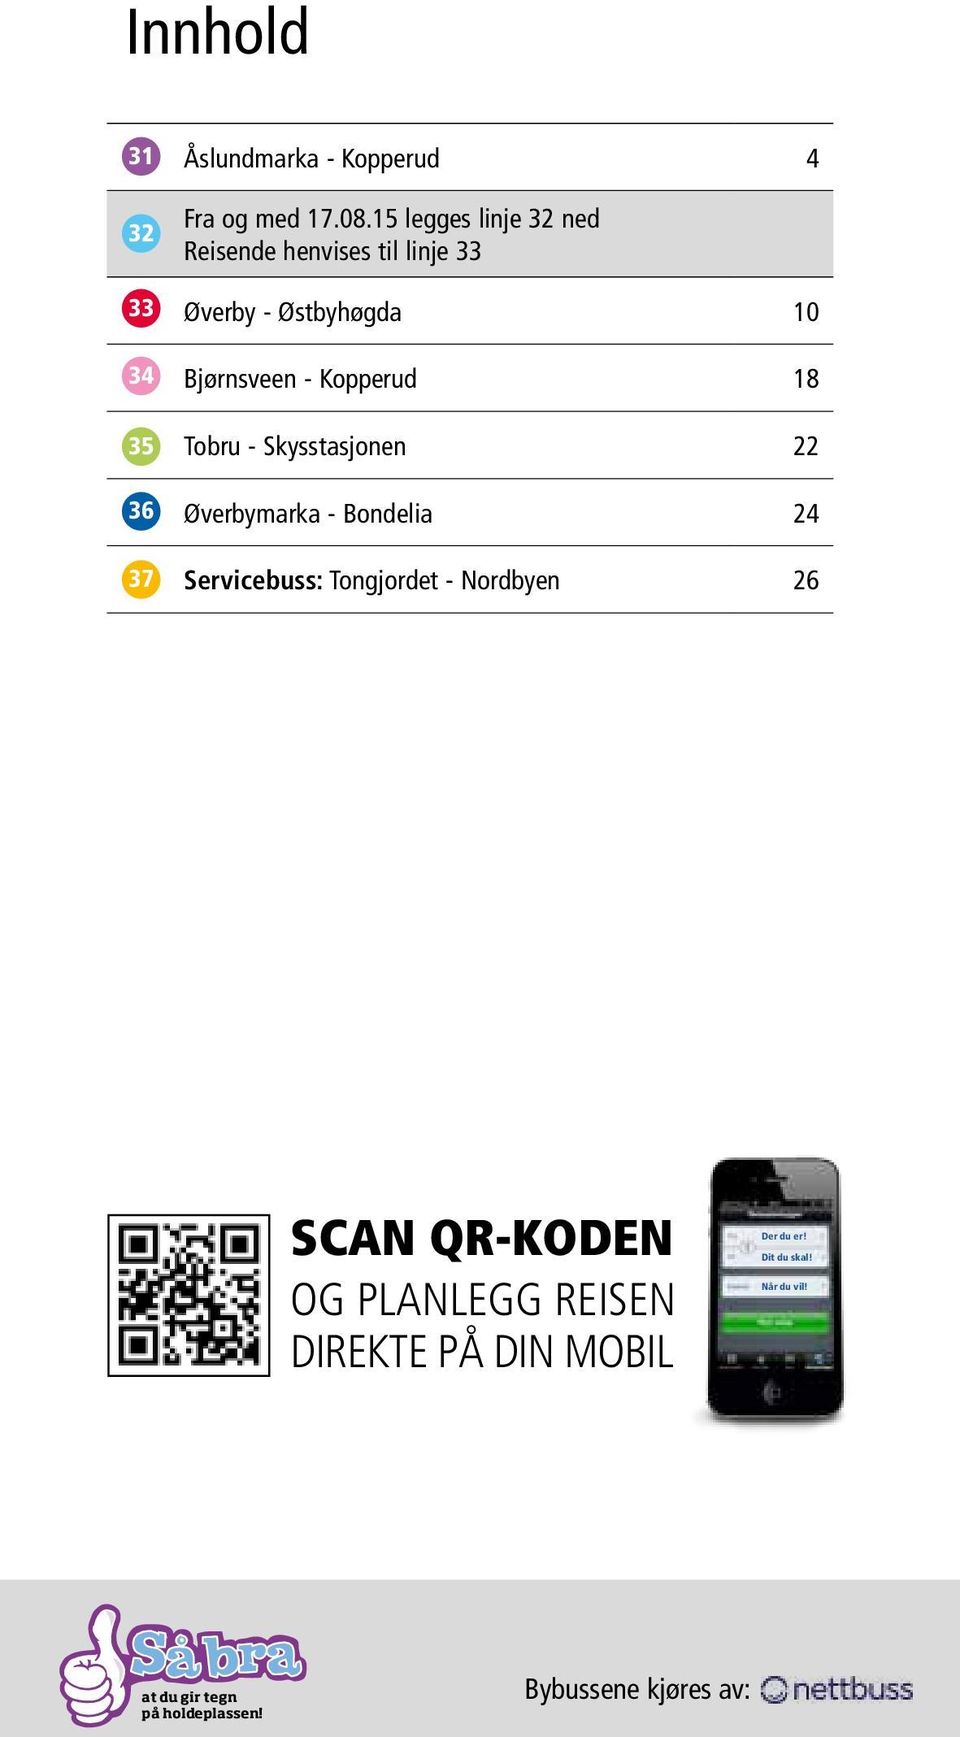 Tobru - Skysstasjonen 22 Øverbymarka - Bondelia 24 Servicebuss: Tongjordet - Nordbyen 26 SCAN